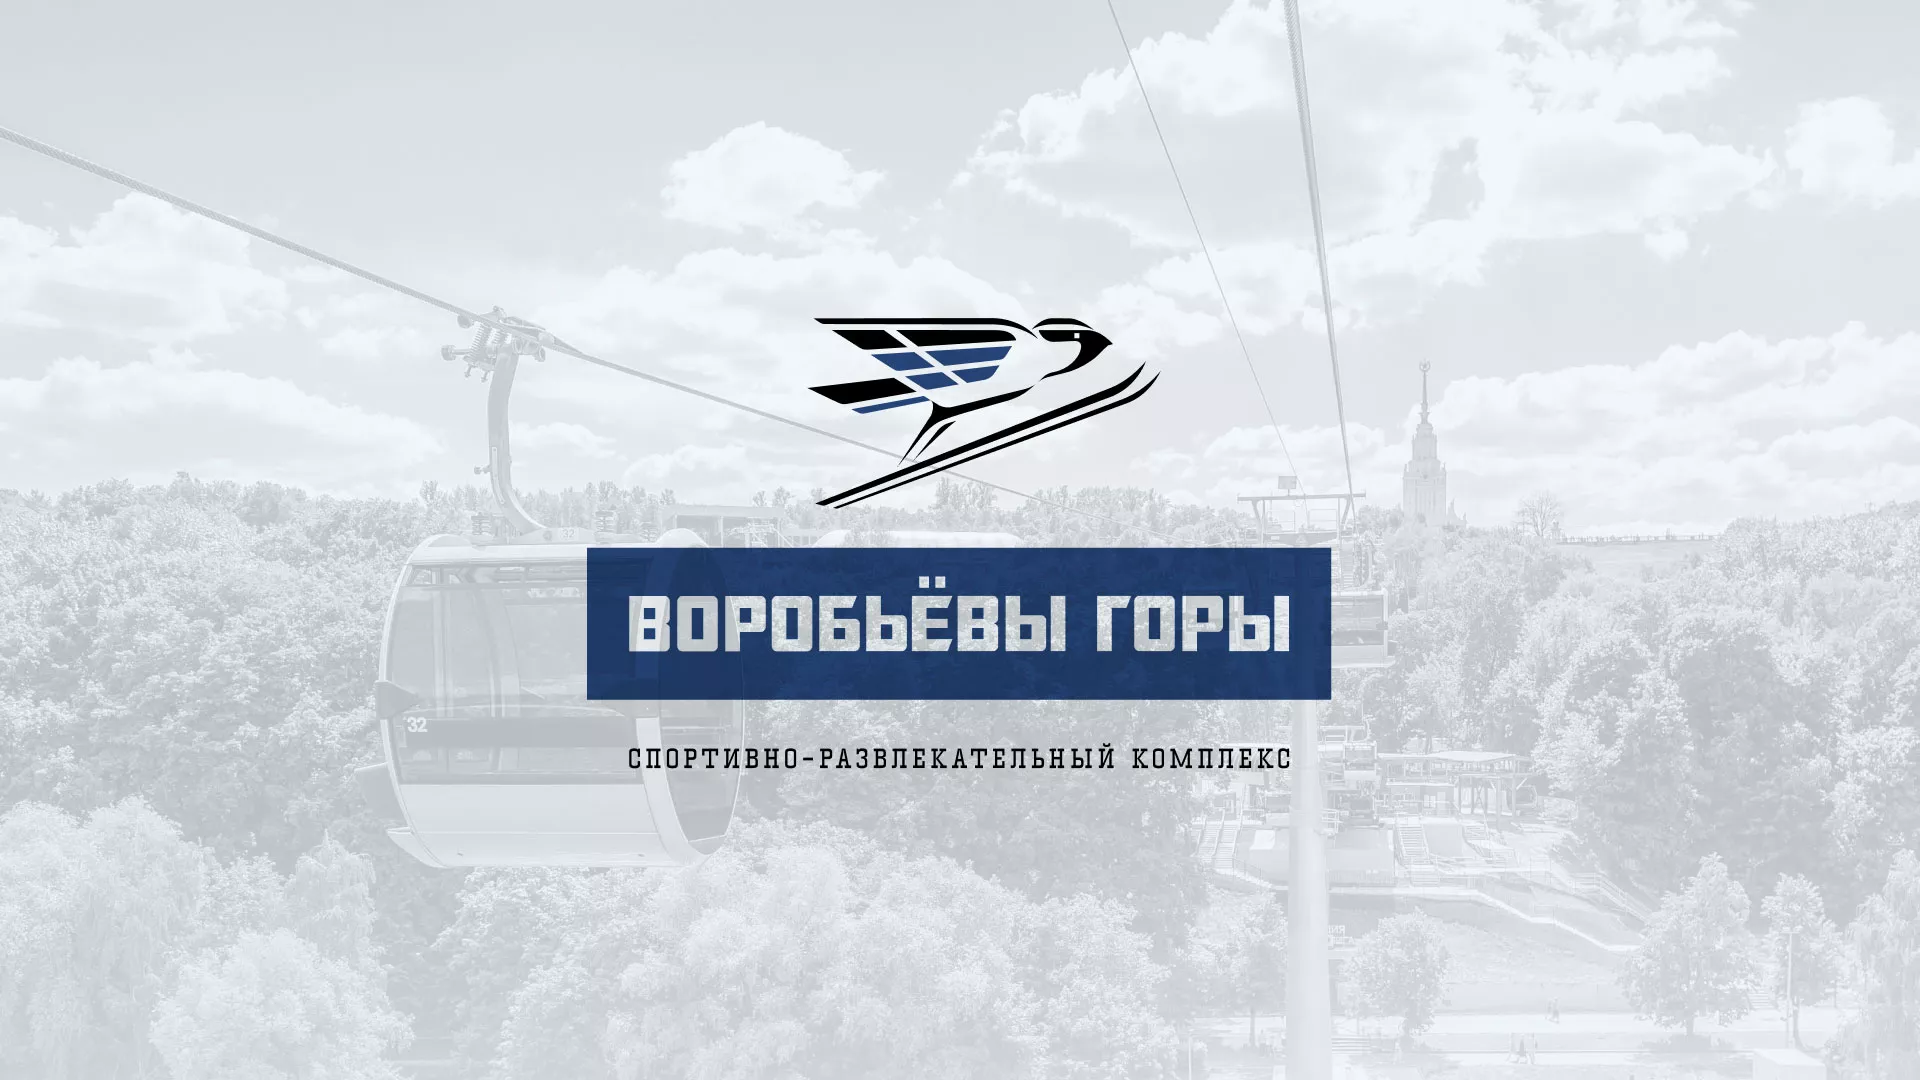 Разработка сайта в Плавске для спортивно-развлекательного комплекса «Воробьёвы горы»